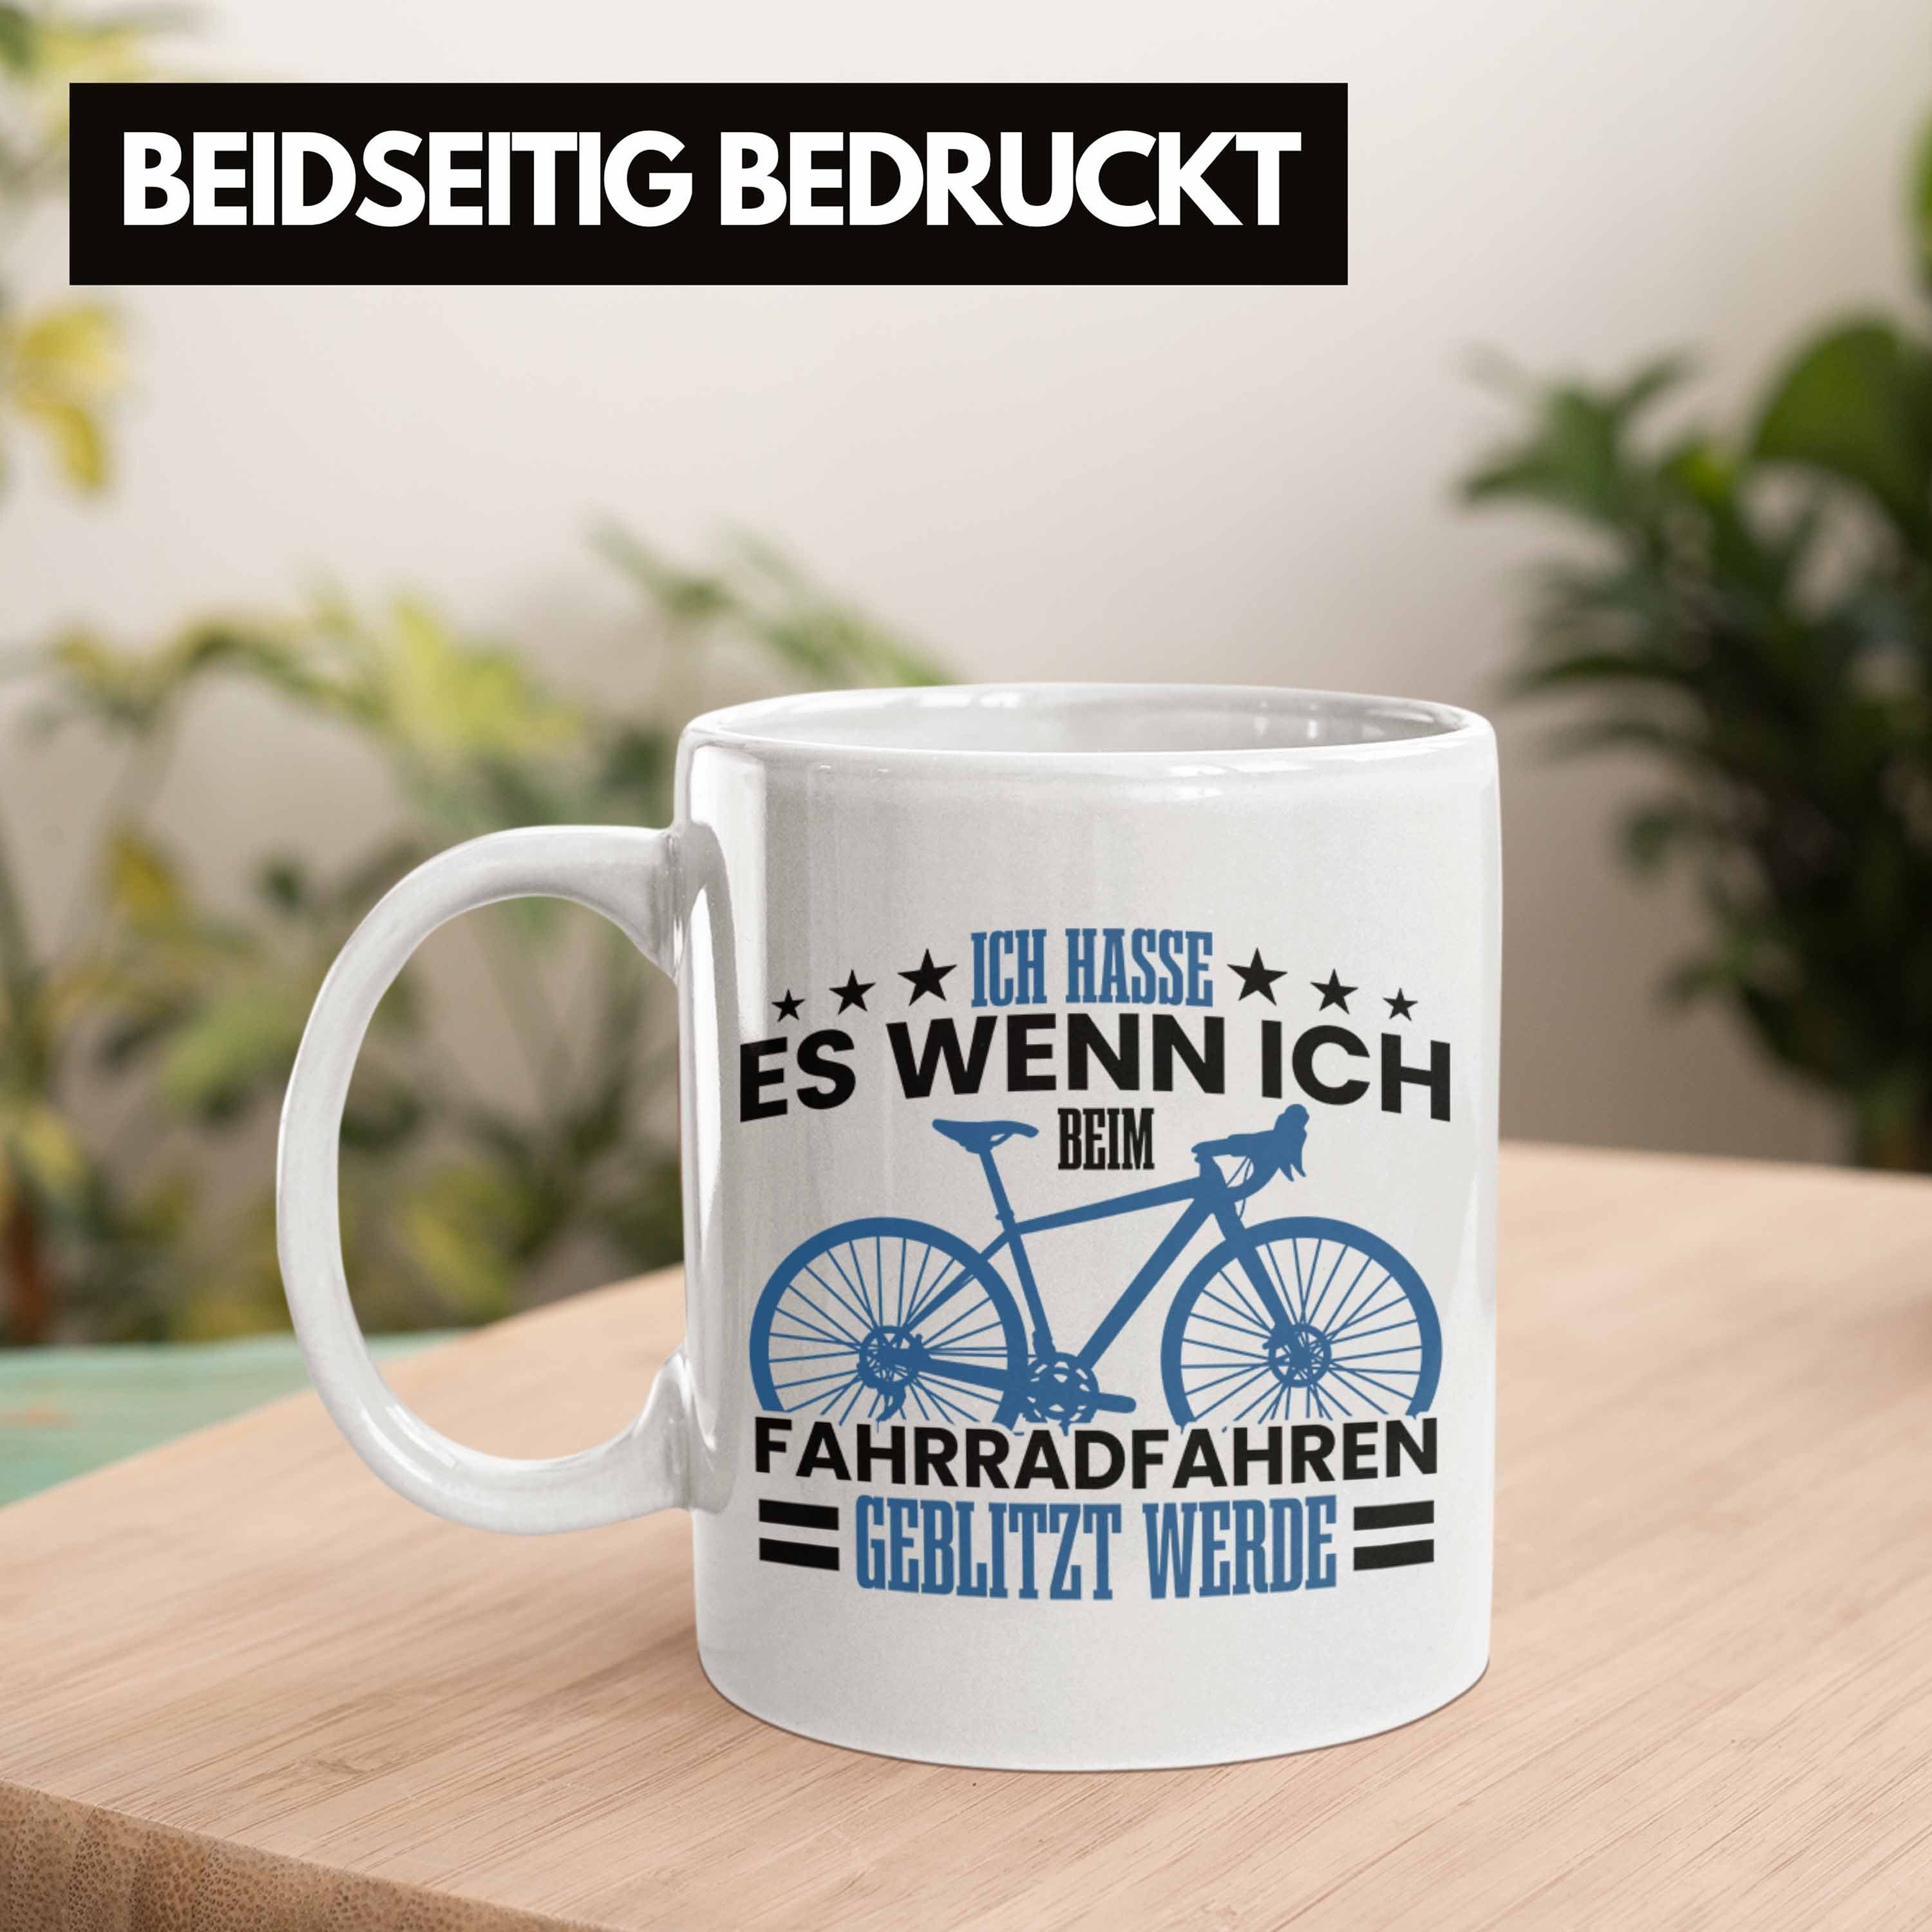 Trendation Radfahrer Fahrradfahrern für Tasse Tasse Geblitzt Wer Weiss Fahrradfahrer Geschenk